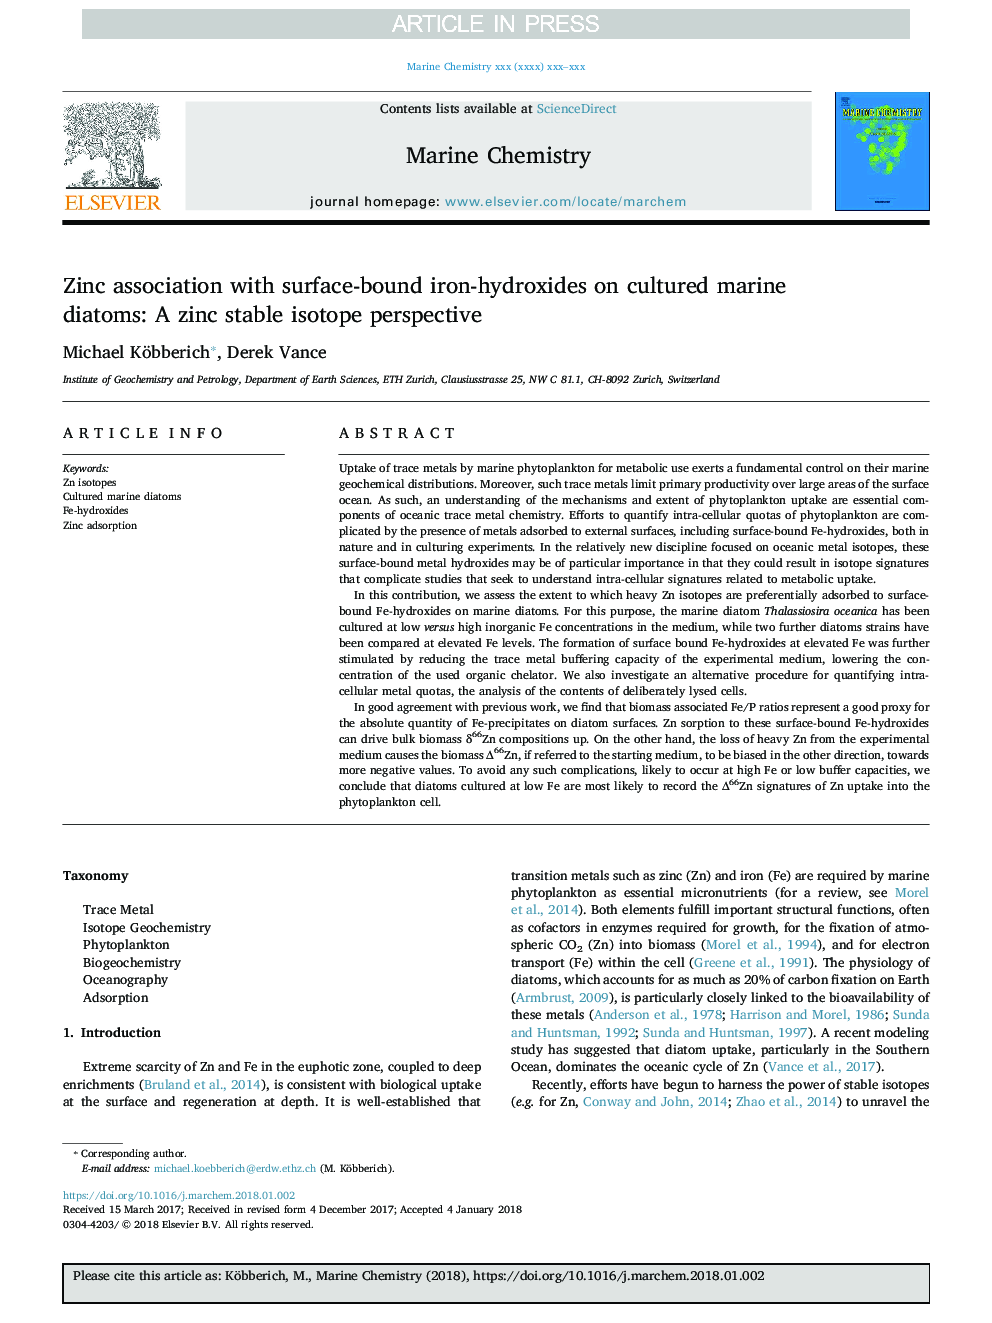 ارتباط روی با آهن-هیدروکسید های سطحی روی دیاتوم های دریایی کشت شده: دیدگاه ایزوتوپ پایدار روی 